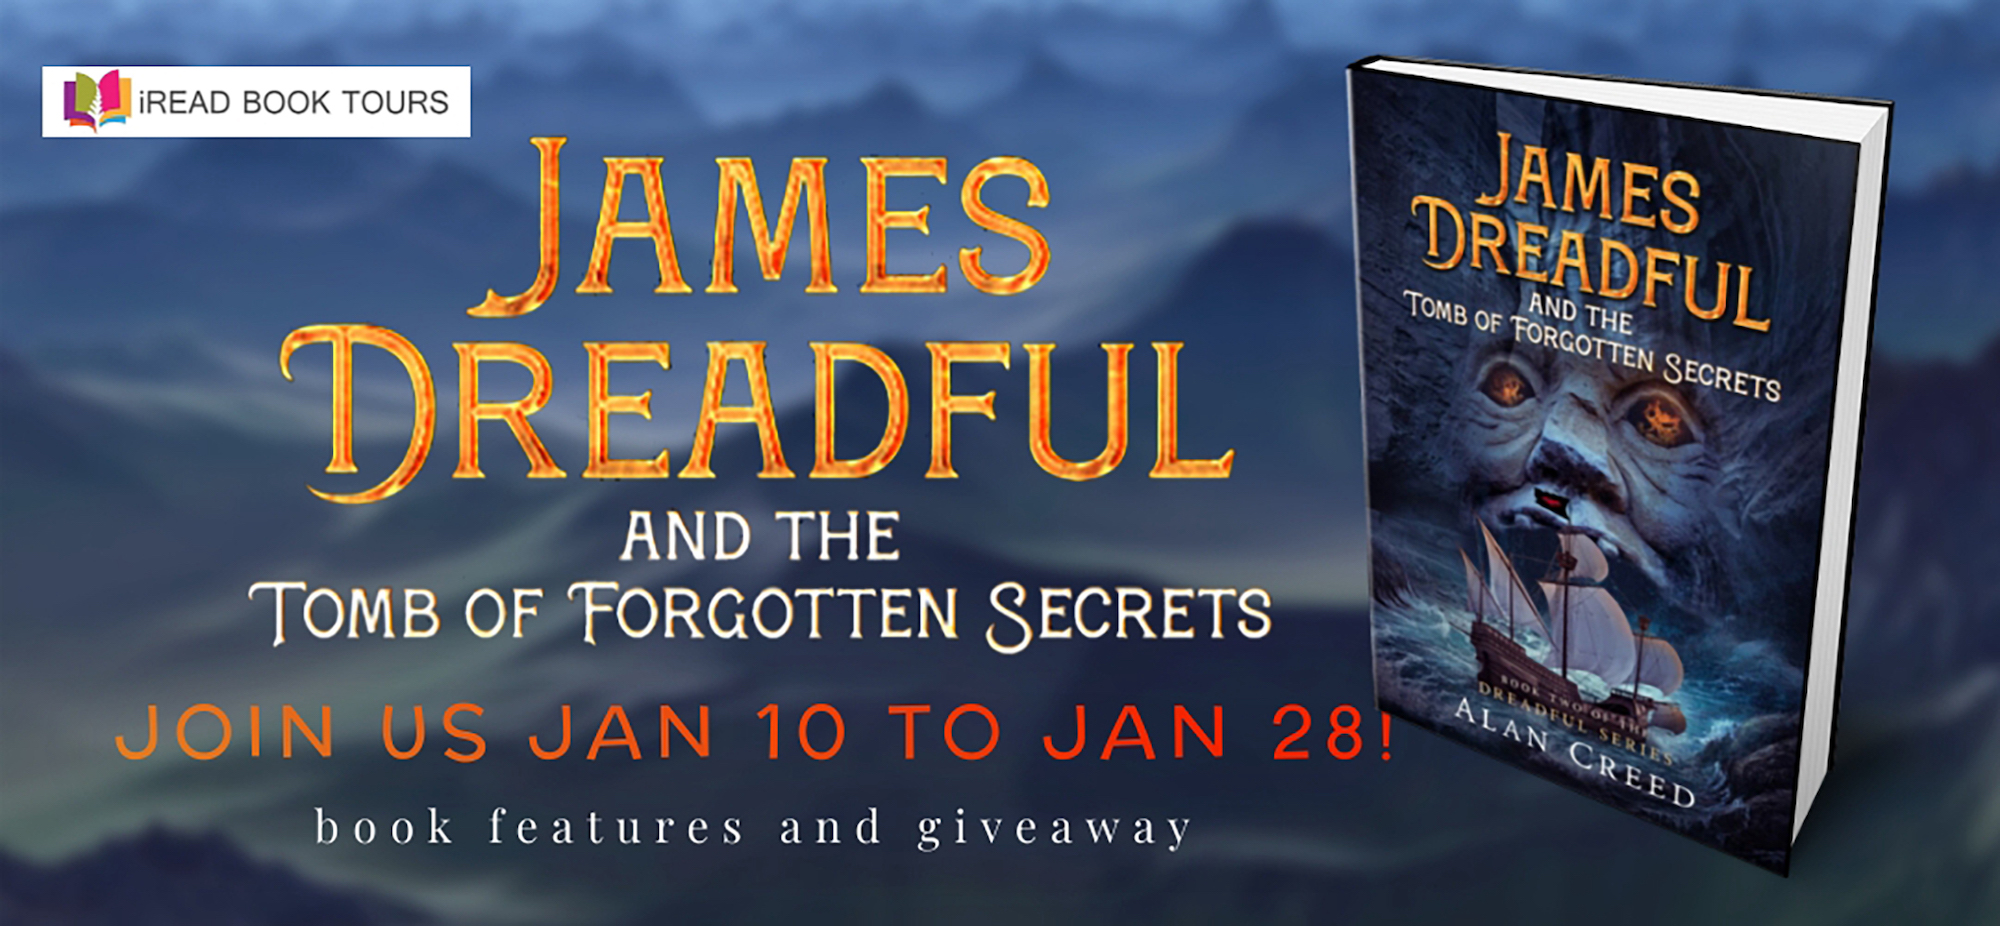 James Dreadful Forgotten Secrets tour banner copy